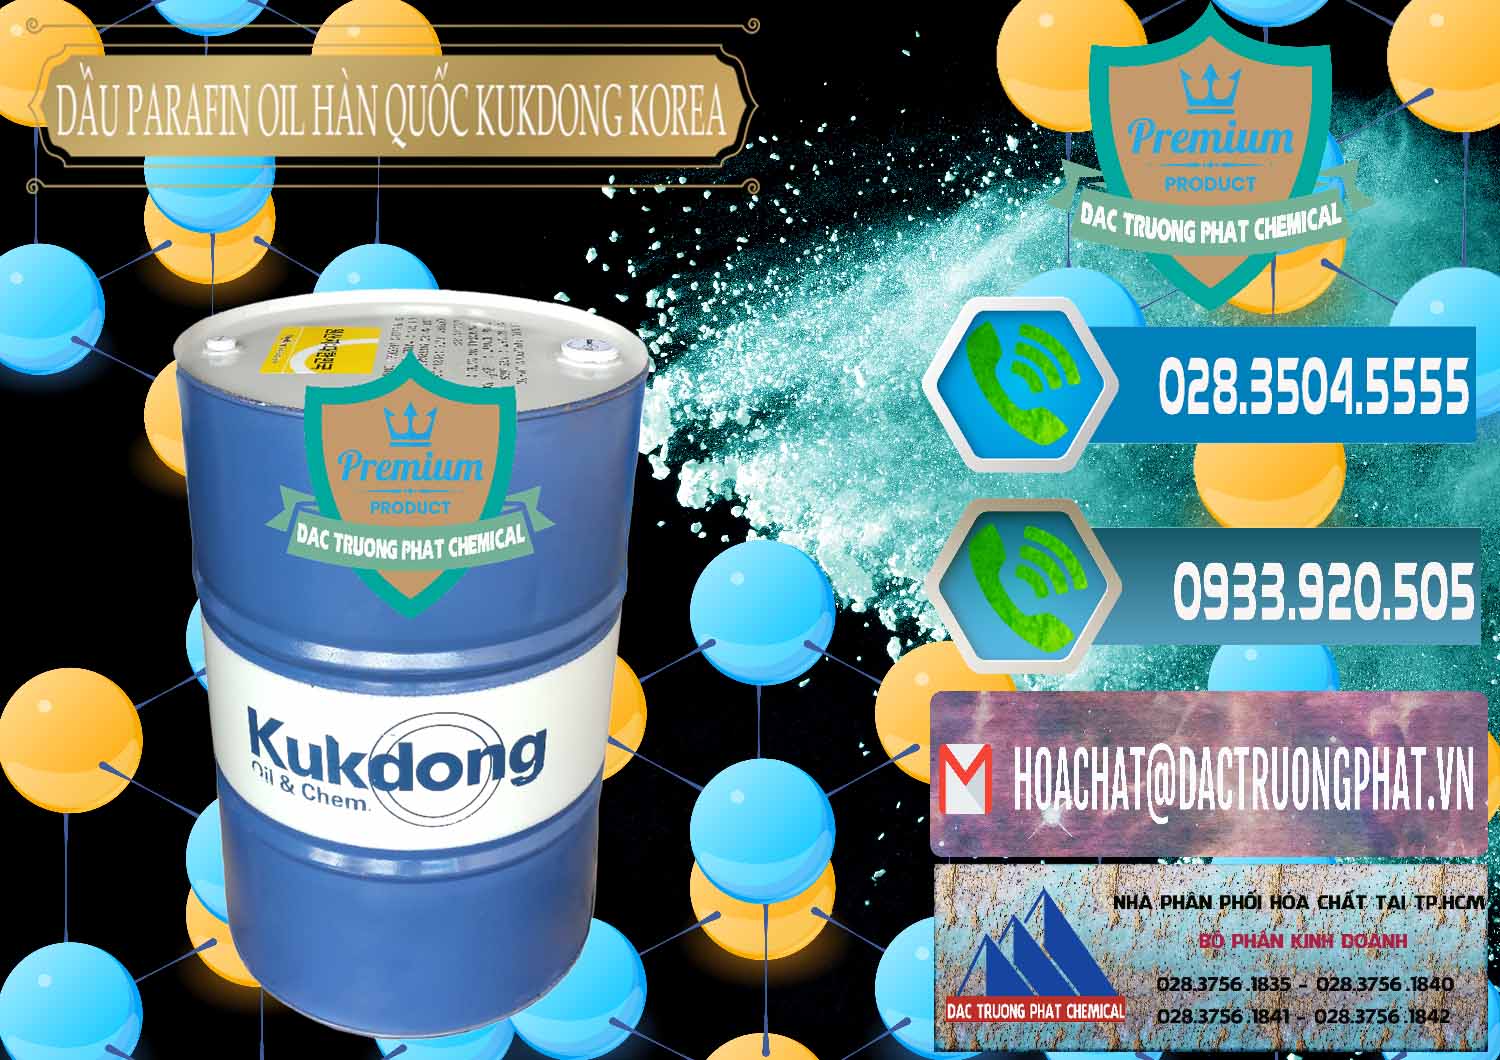 Công ty chuyên kinh doanh và bán Dầu Parafin Oil Hàn Quốc Korea Kukdong - 0060 - Nhà phân phối & cung cấp hóa chất tại TP.HCM - congtyhoachat.net